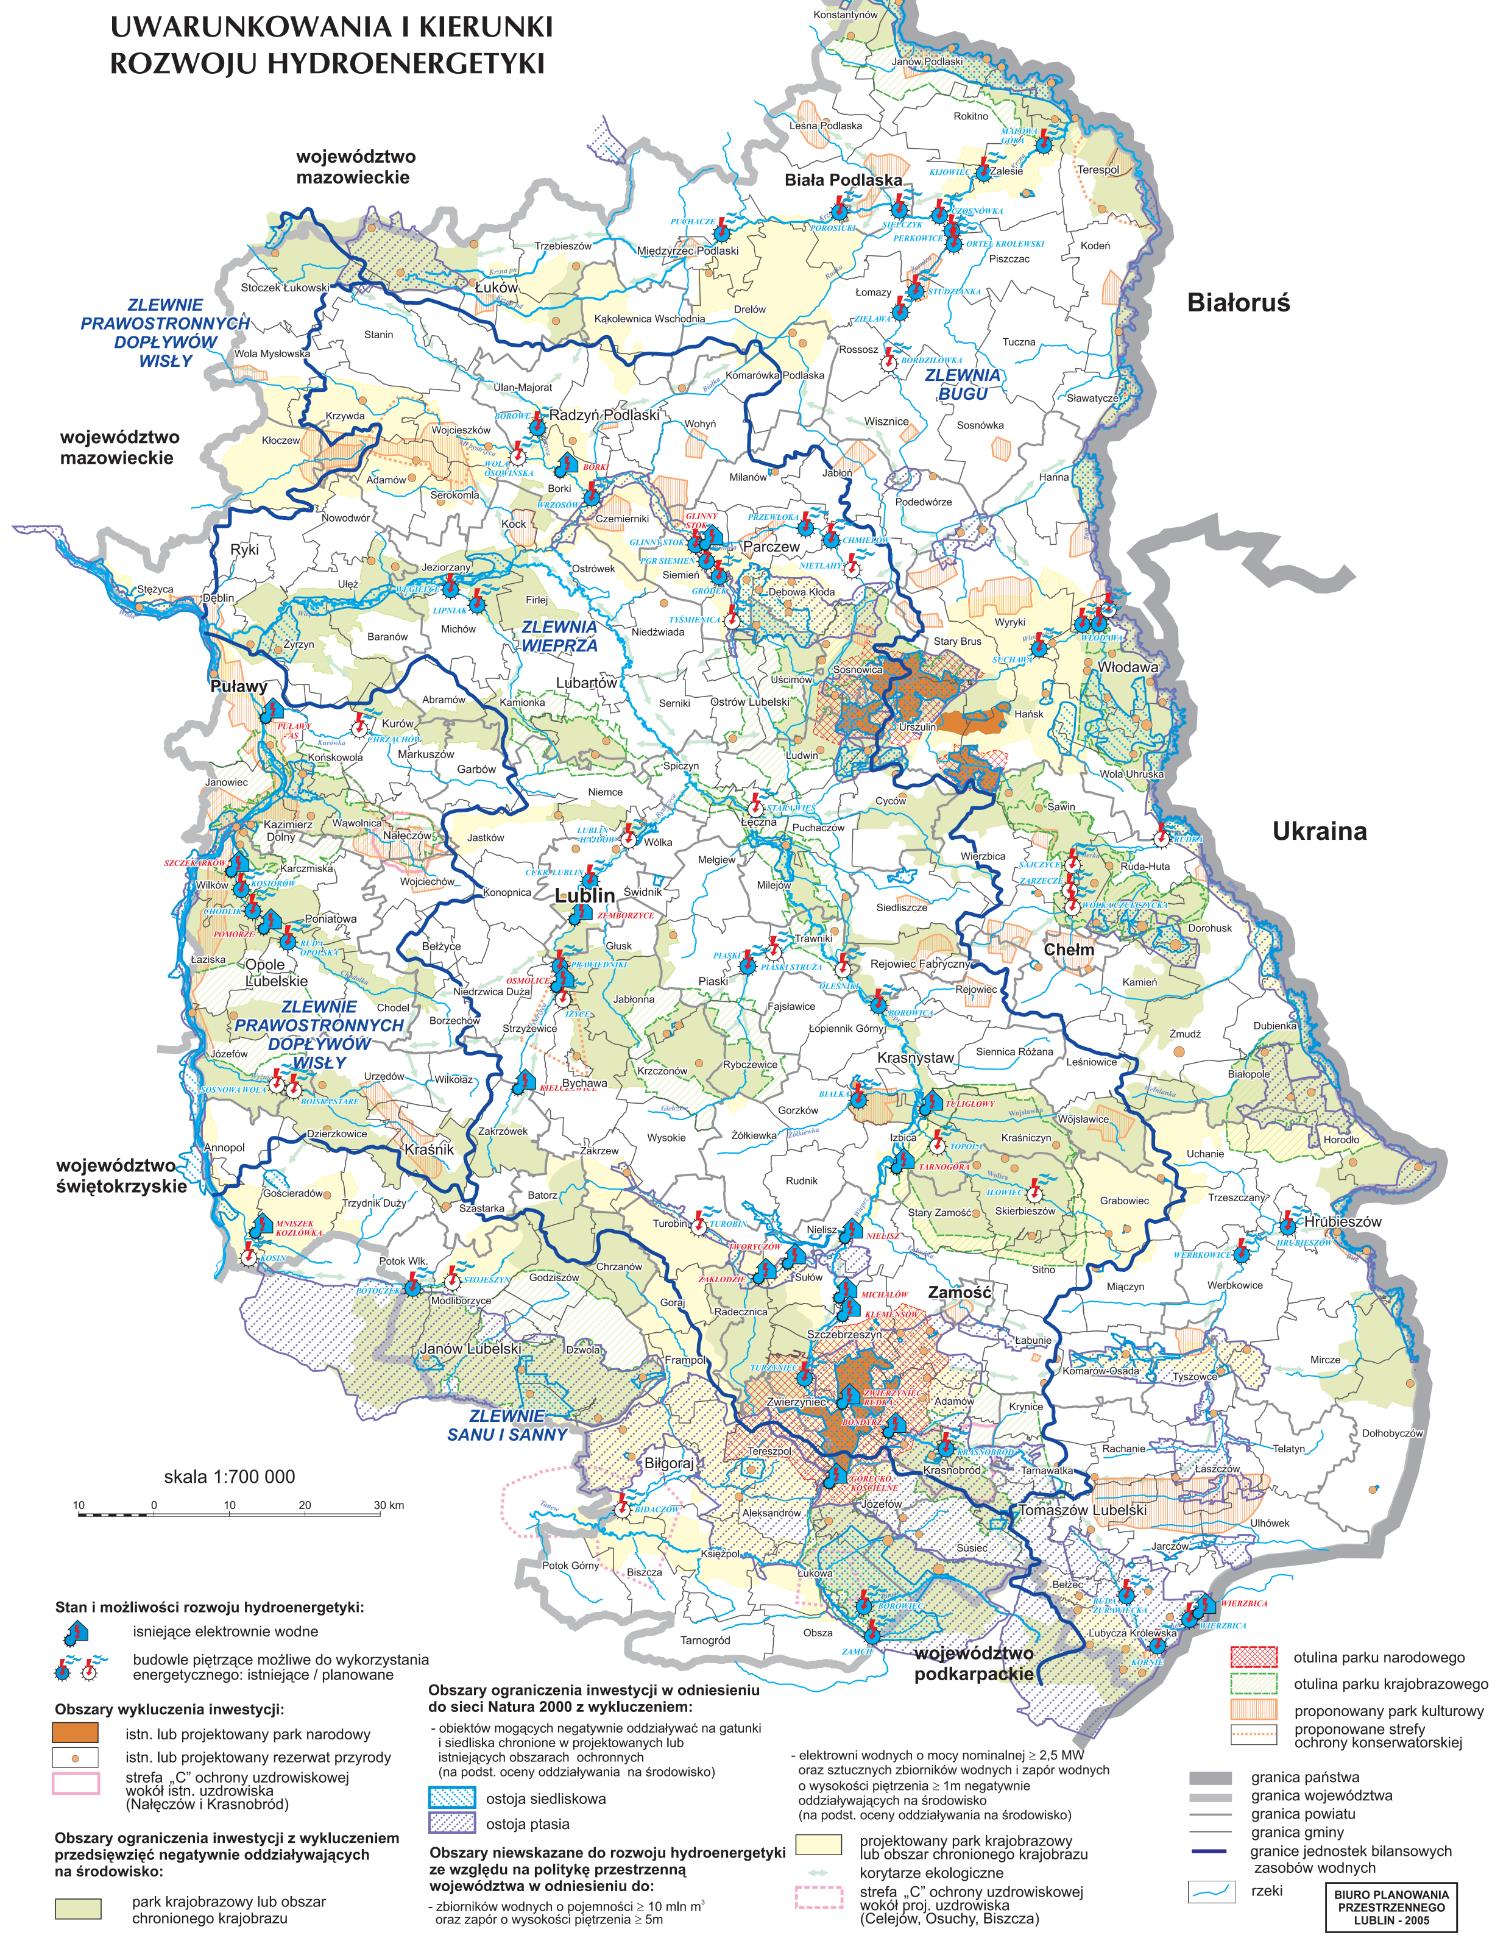 energii wodnej (hydroenergetyki) w województwie lubelskim. PRZESTRZEŃ I ŚRODOWISKO Mapa 21.